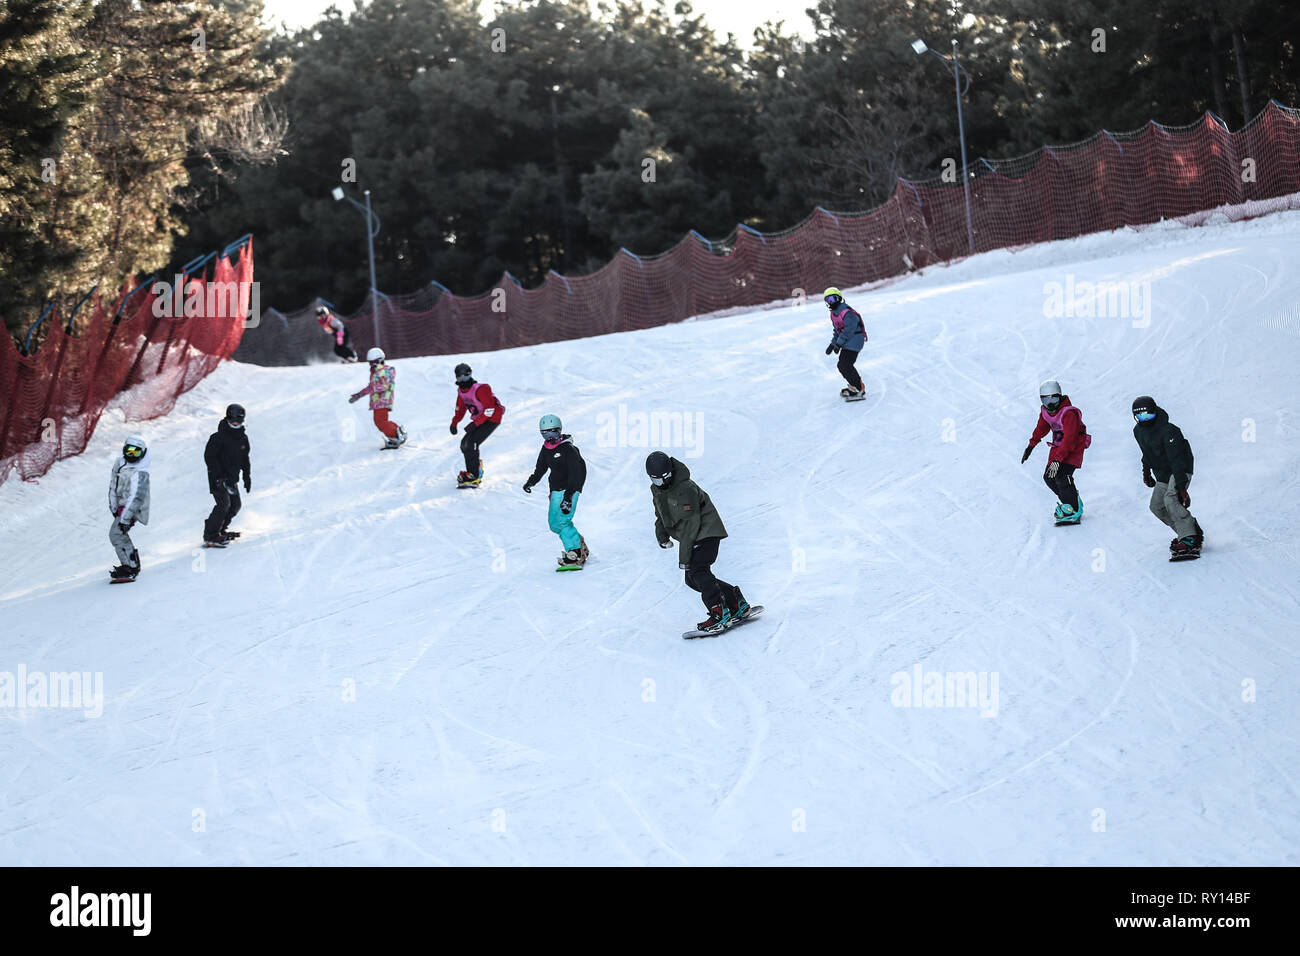 (190311) - SHENYANG, März 11, 2019 (Xinhua) - Kinder Praxis Skifahren während einer Schulung in Shenyang Sport Universität, in Shenyang im Nordosten der chinesischen Provinz Liaoning, am 23.01.2019. Es gibt rund 30 Kinder von 8 bis 16 Jahren studieren snowboard Halfpipe in Shenyang Sport Universität. Einige von ihnen wollen, professionelle Athleten zu werden, und einige von ihnen einfach nur einen Eindruck von diesem Sport zu haben. In Peking 2022 winter spiele in der Nähe von Drew, mehr und mehr Menschen in China, darunter junge Studenten, begann zu lernen und in Eis und Schnee Sport teilnehmen. (Xinhua / Pan Yulong) Stockfoto